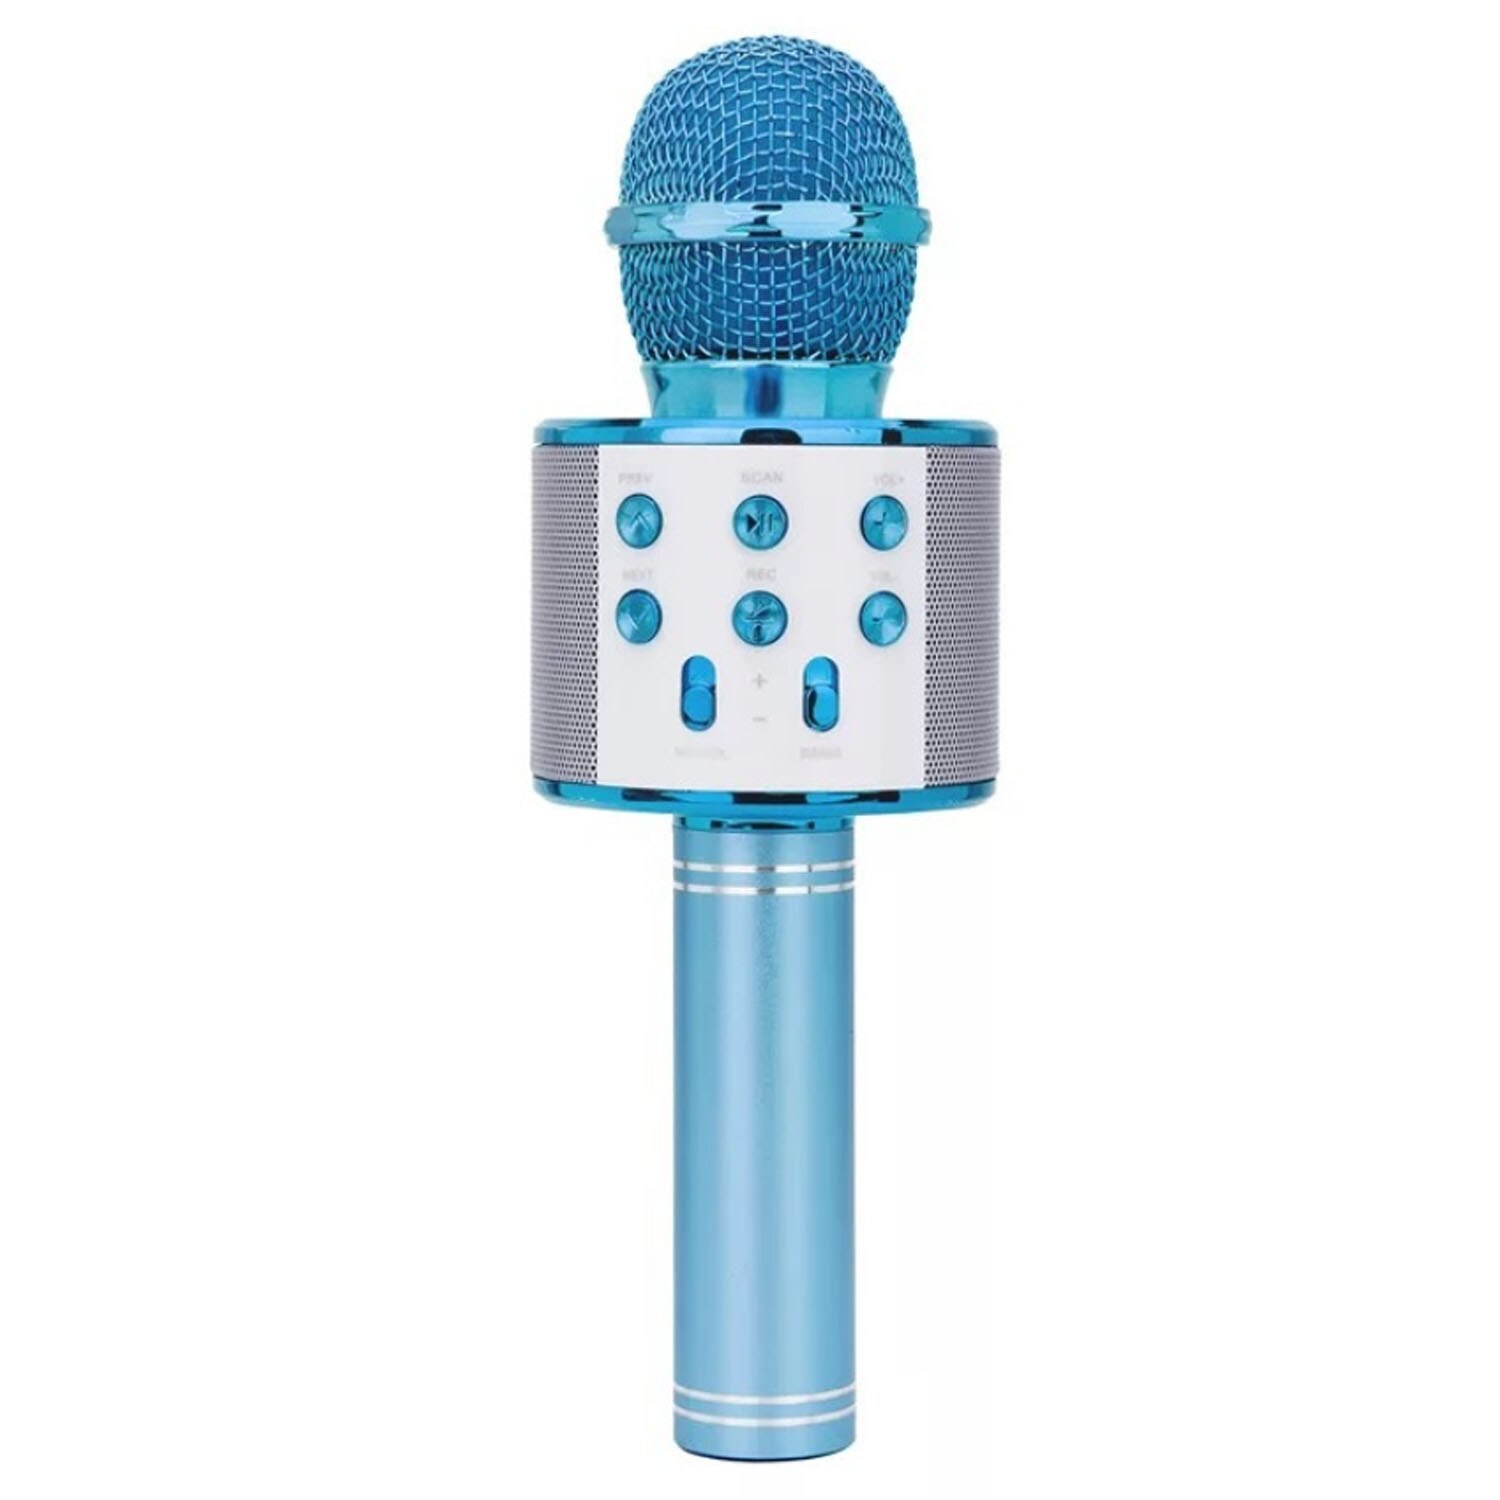 Trådløs bluetooth karaoke mikrofon 3 i 1 håndholdt karaoke mic højttaler ekko mikrofon til hjemmebane jul fødselsdag hjemmefest: Blå